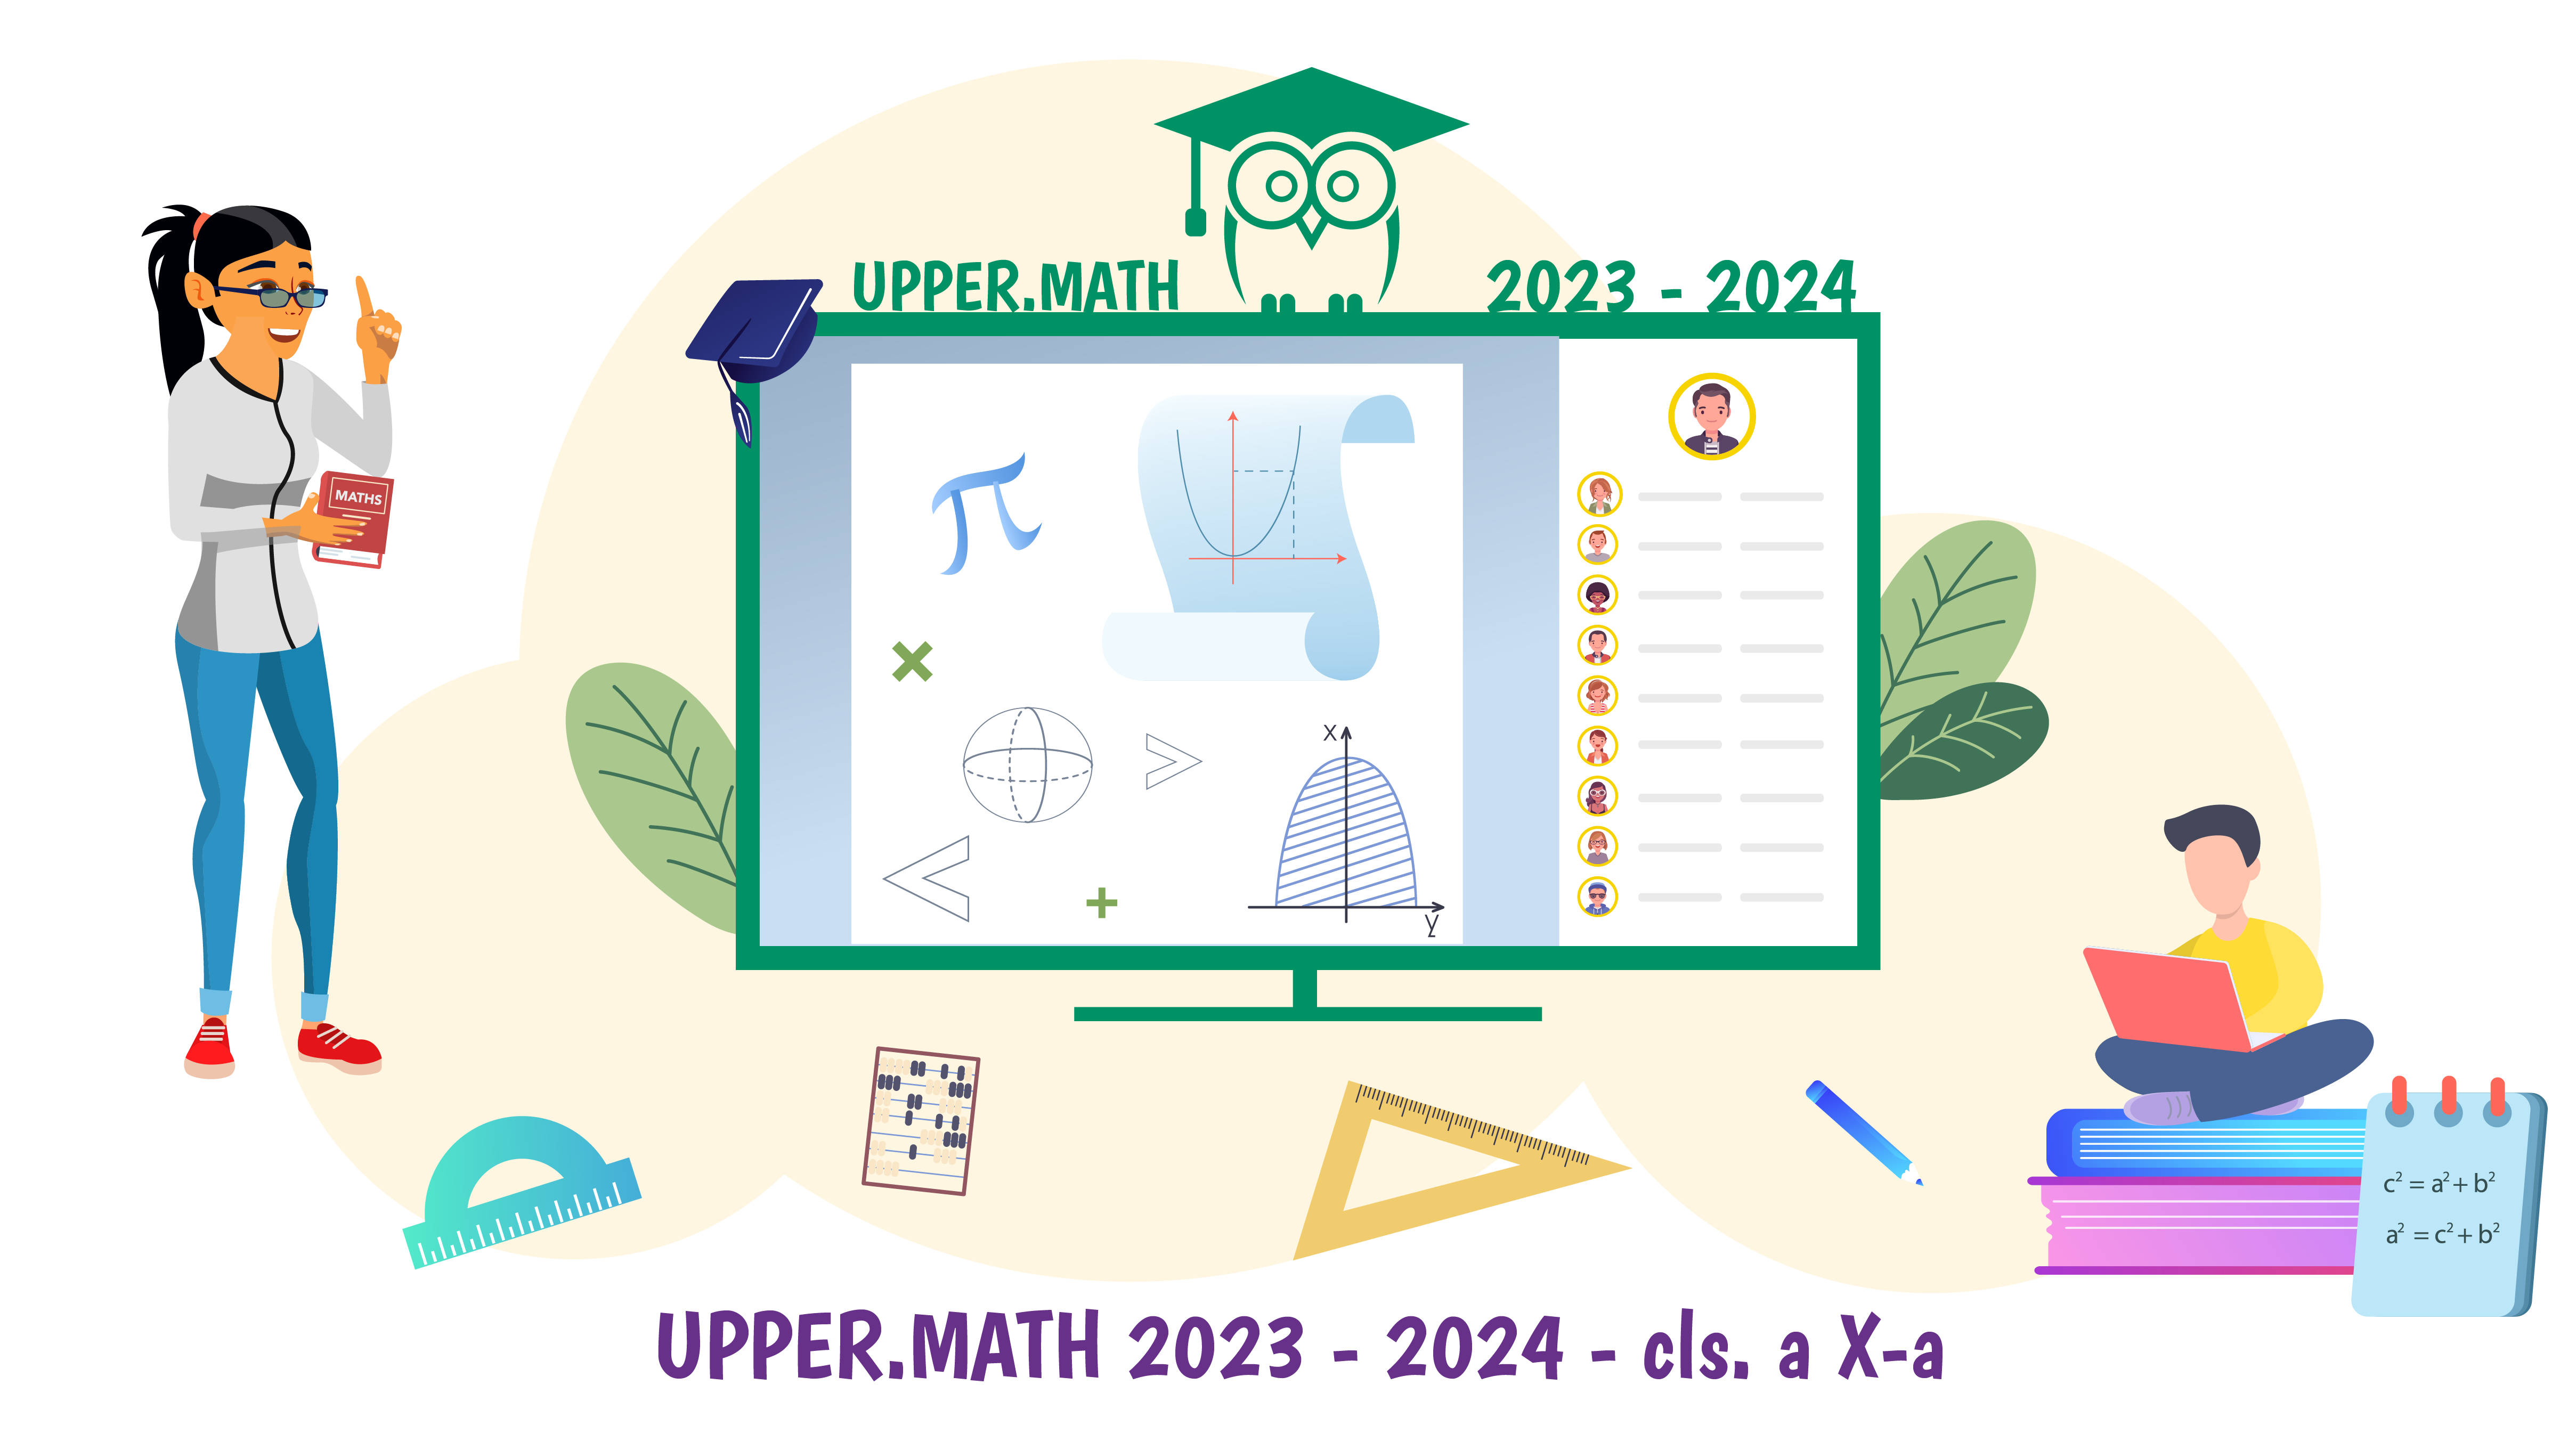 Upper.Math 2023-2024 clasa a X-a - Cursuri de pregatire matematica